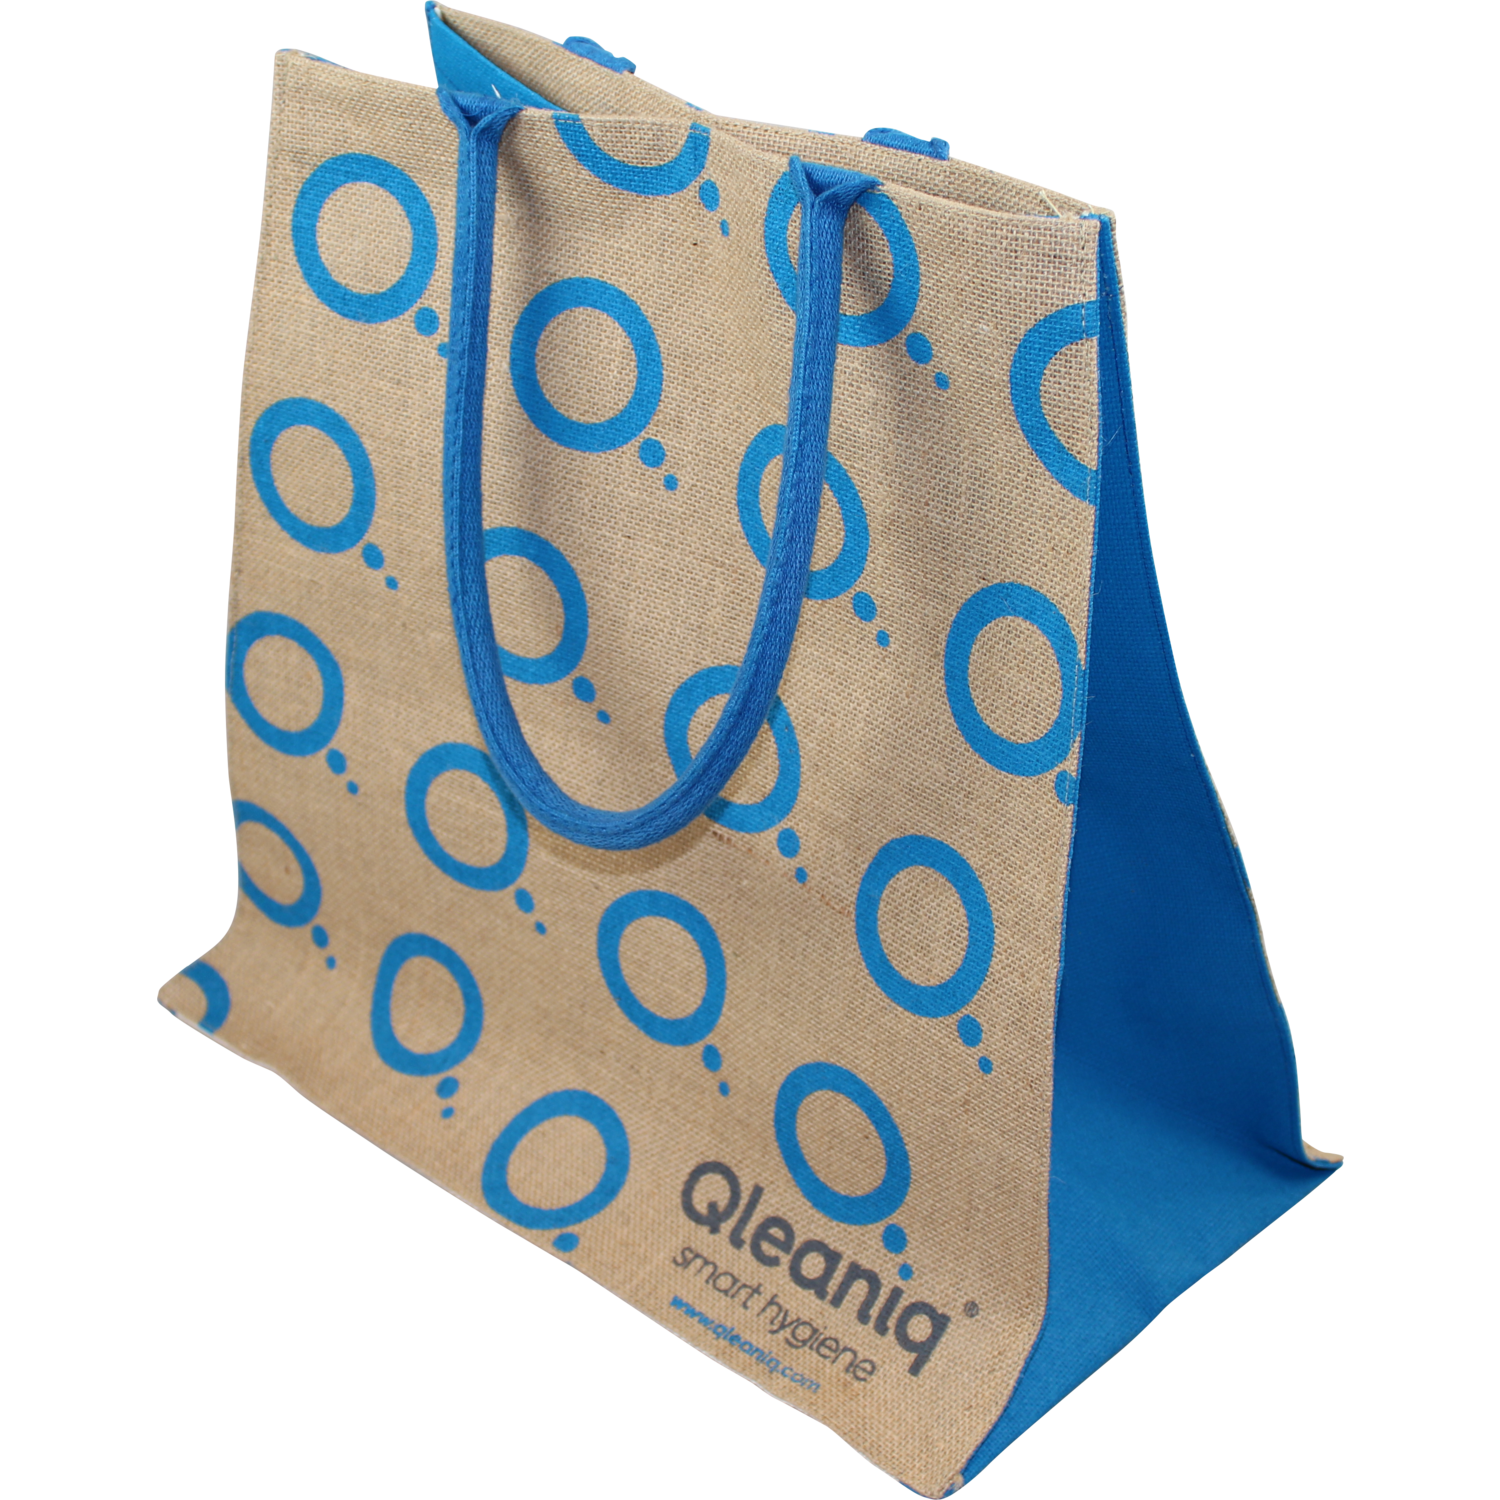 Qleaniq® Bag, Jute, 45x40cm, carrier bag,  1